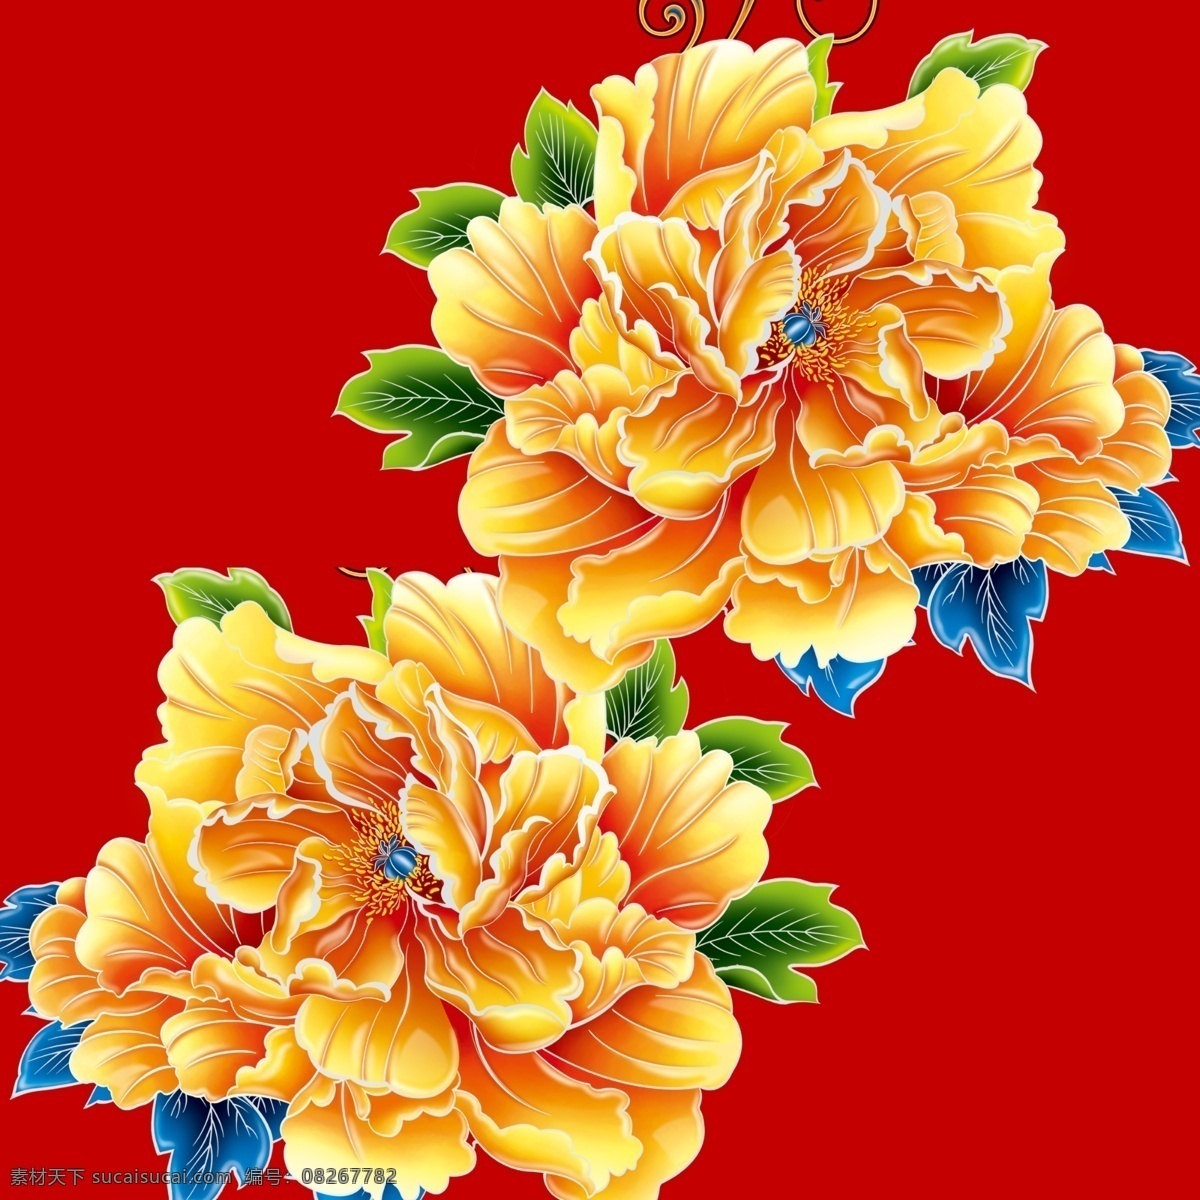 牡丹 牡丹花 国花 富丽 红色 尊贵 背景 背景素材 底纹边框 背景底纹